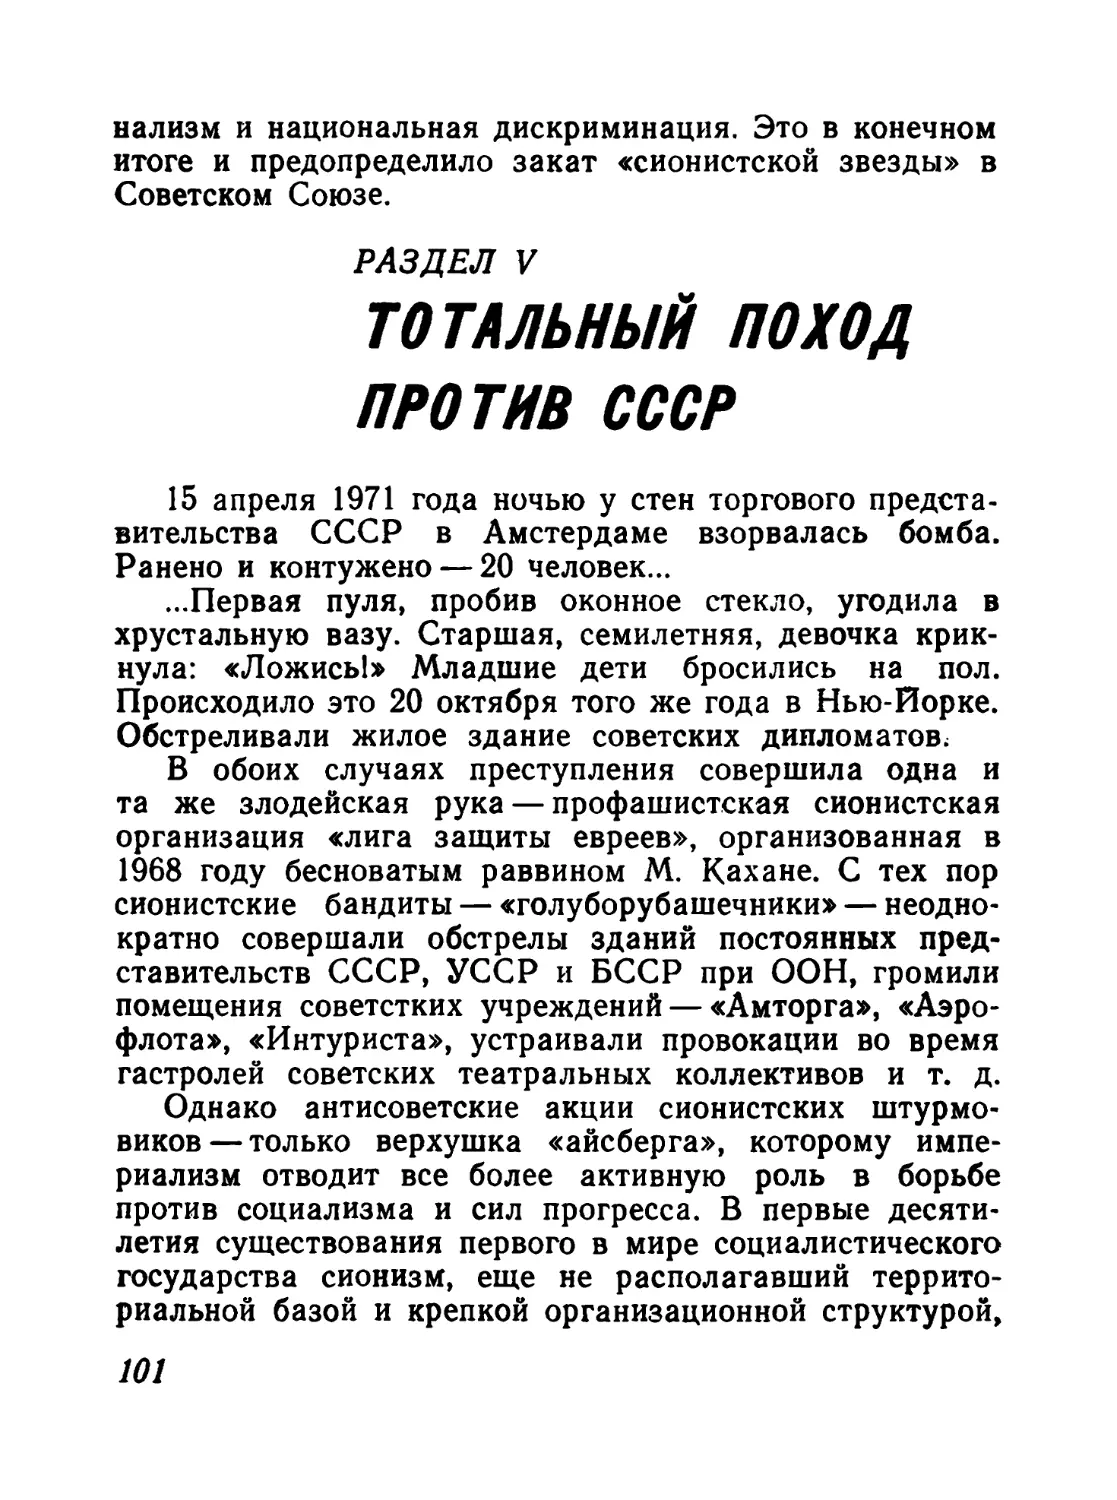 Раздел V. Тотальный поход против СССР